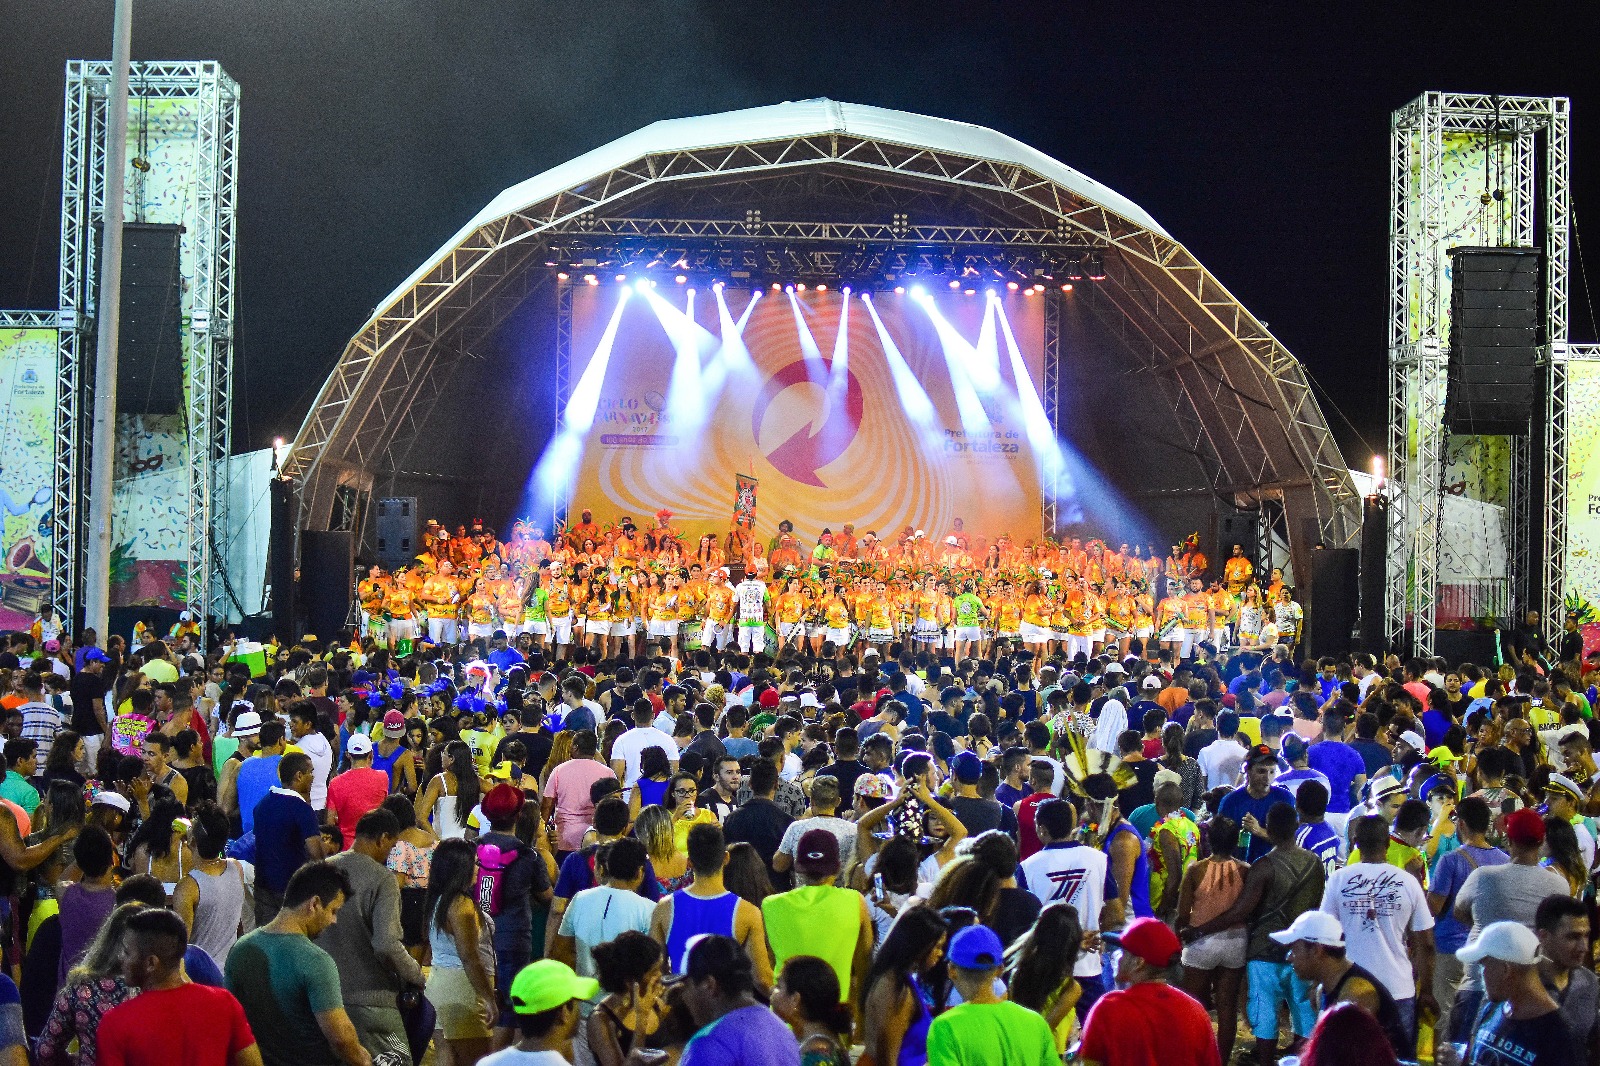 Prefeitura divulga atrações do pré-carnaval de Fortaleza 2020; confira programação completa